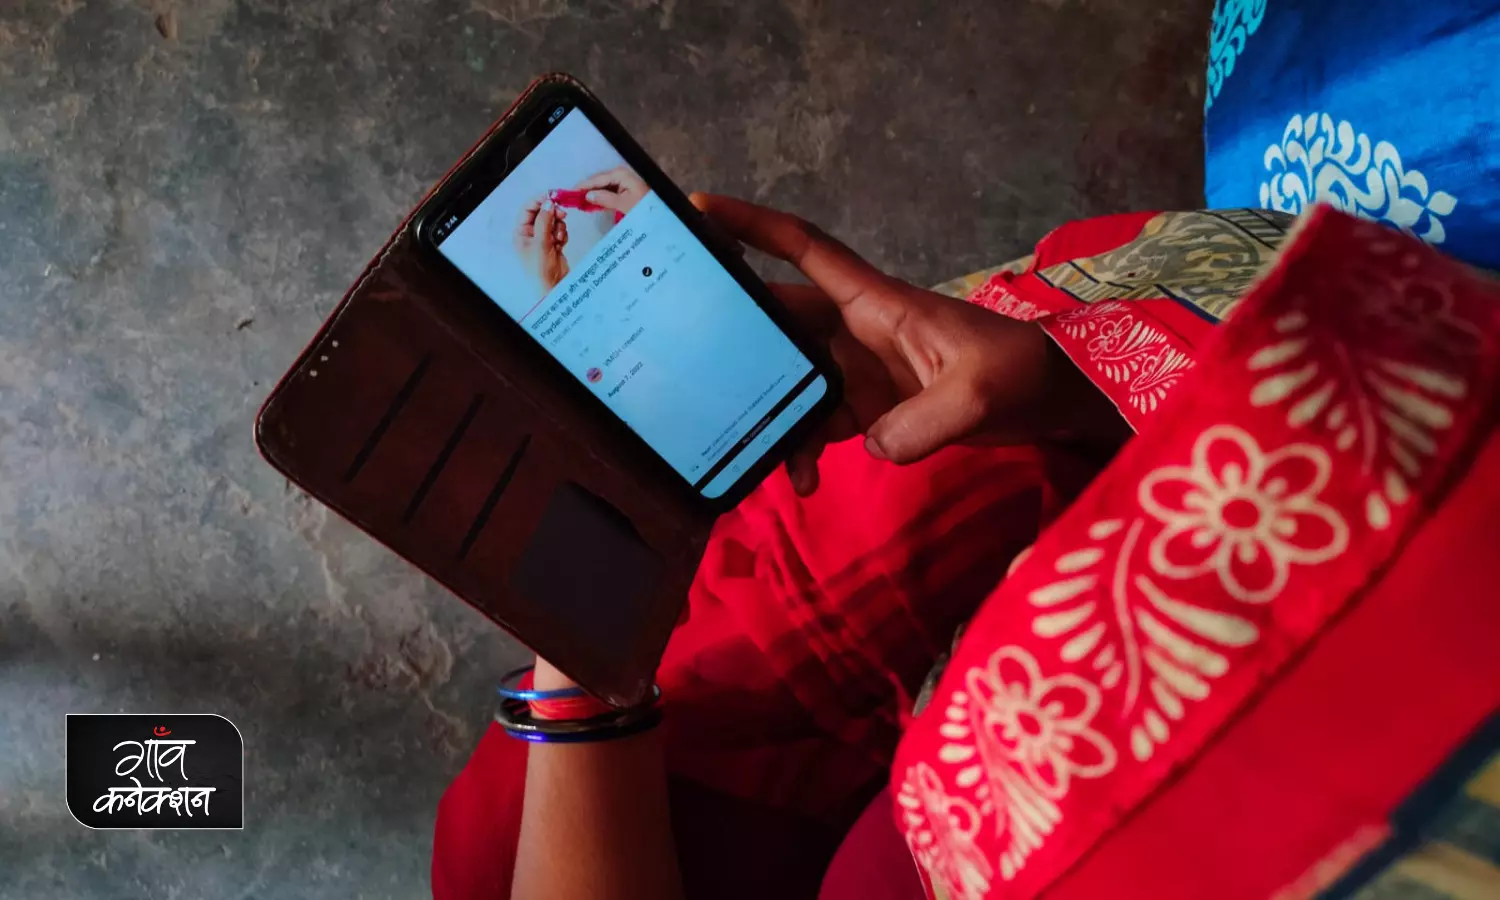 इंटरनेट बना रहा है गाँव की औरतों की राह आसान,  शहरों से ज़्यादा गाँवों में बढ़ रहा है इसका इस्तेमाल